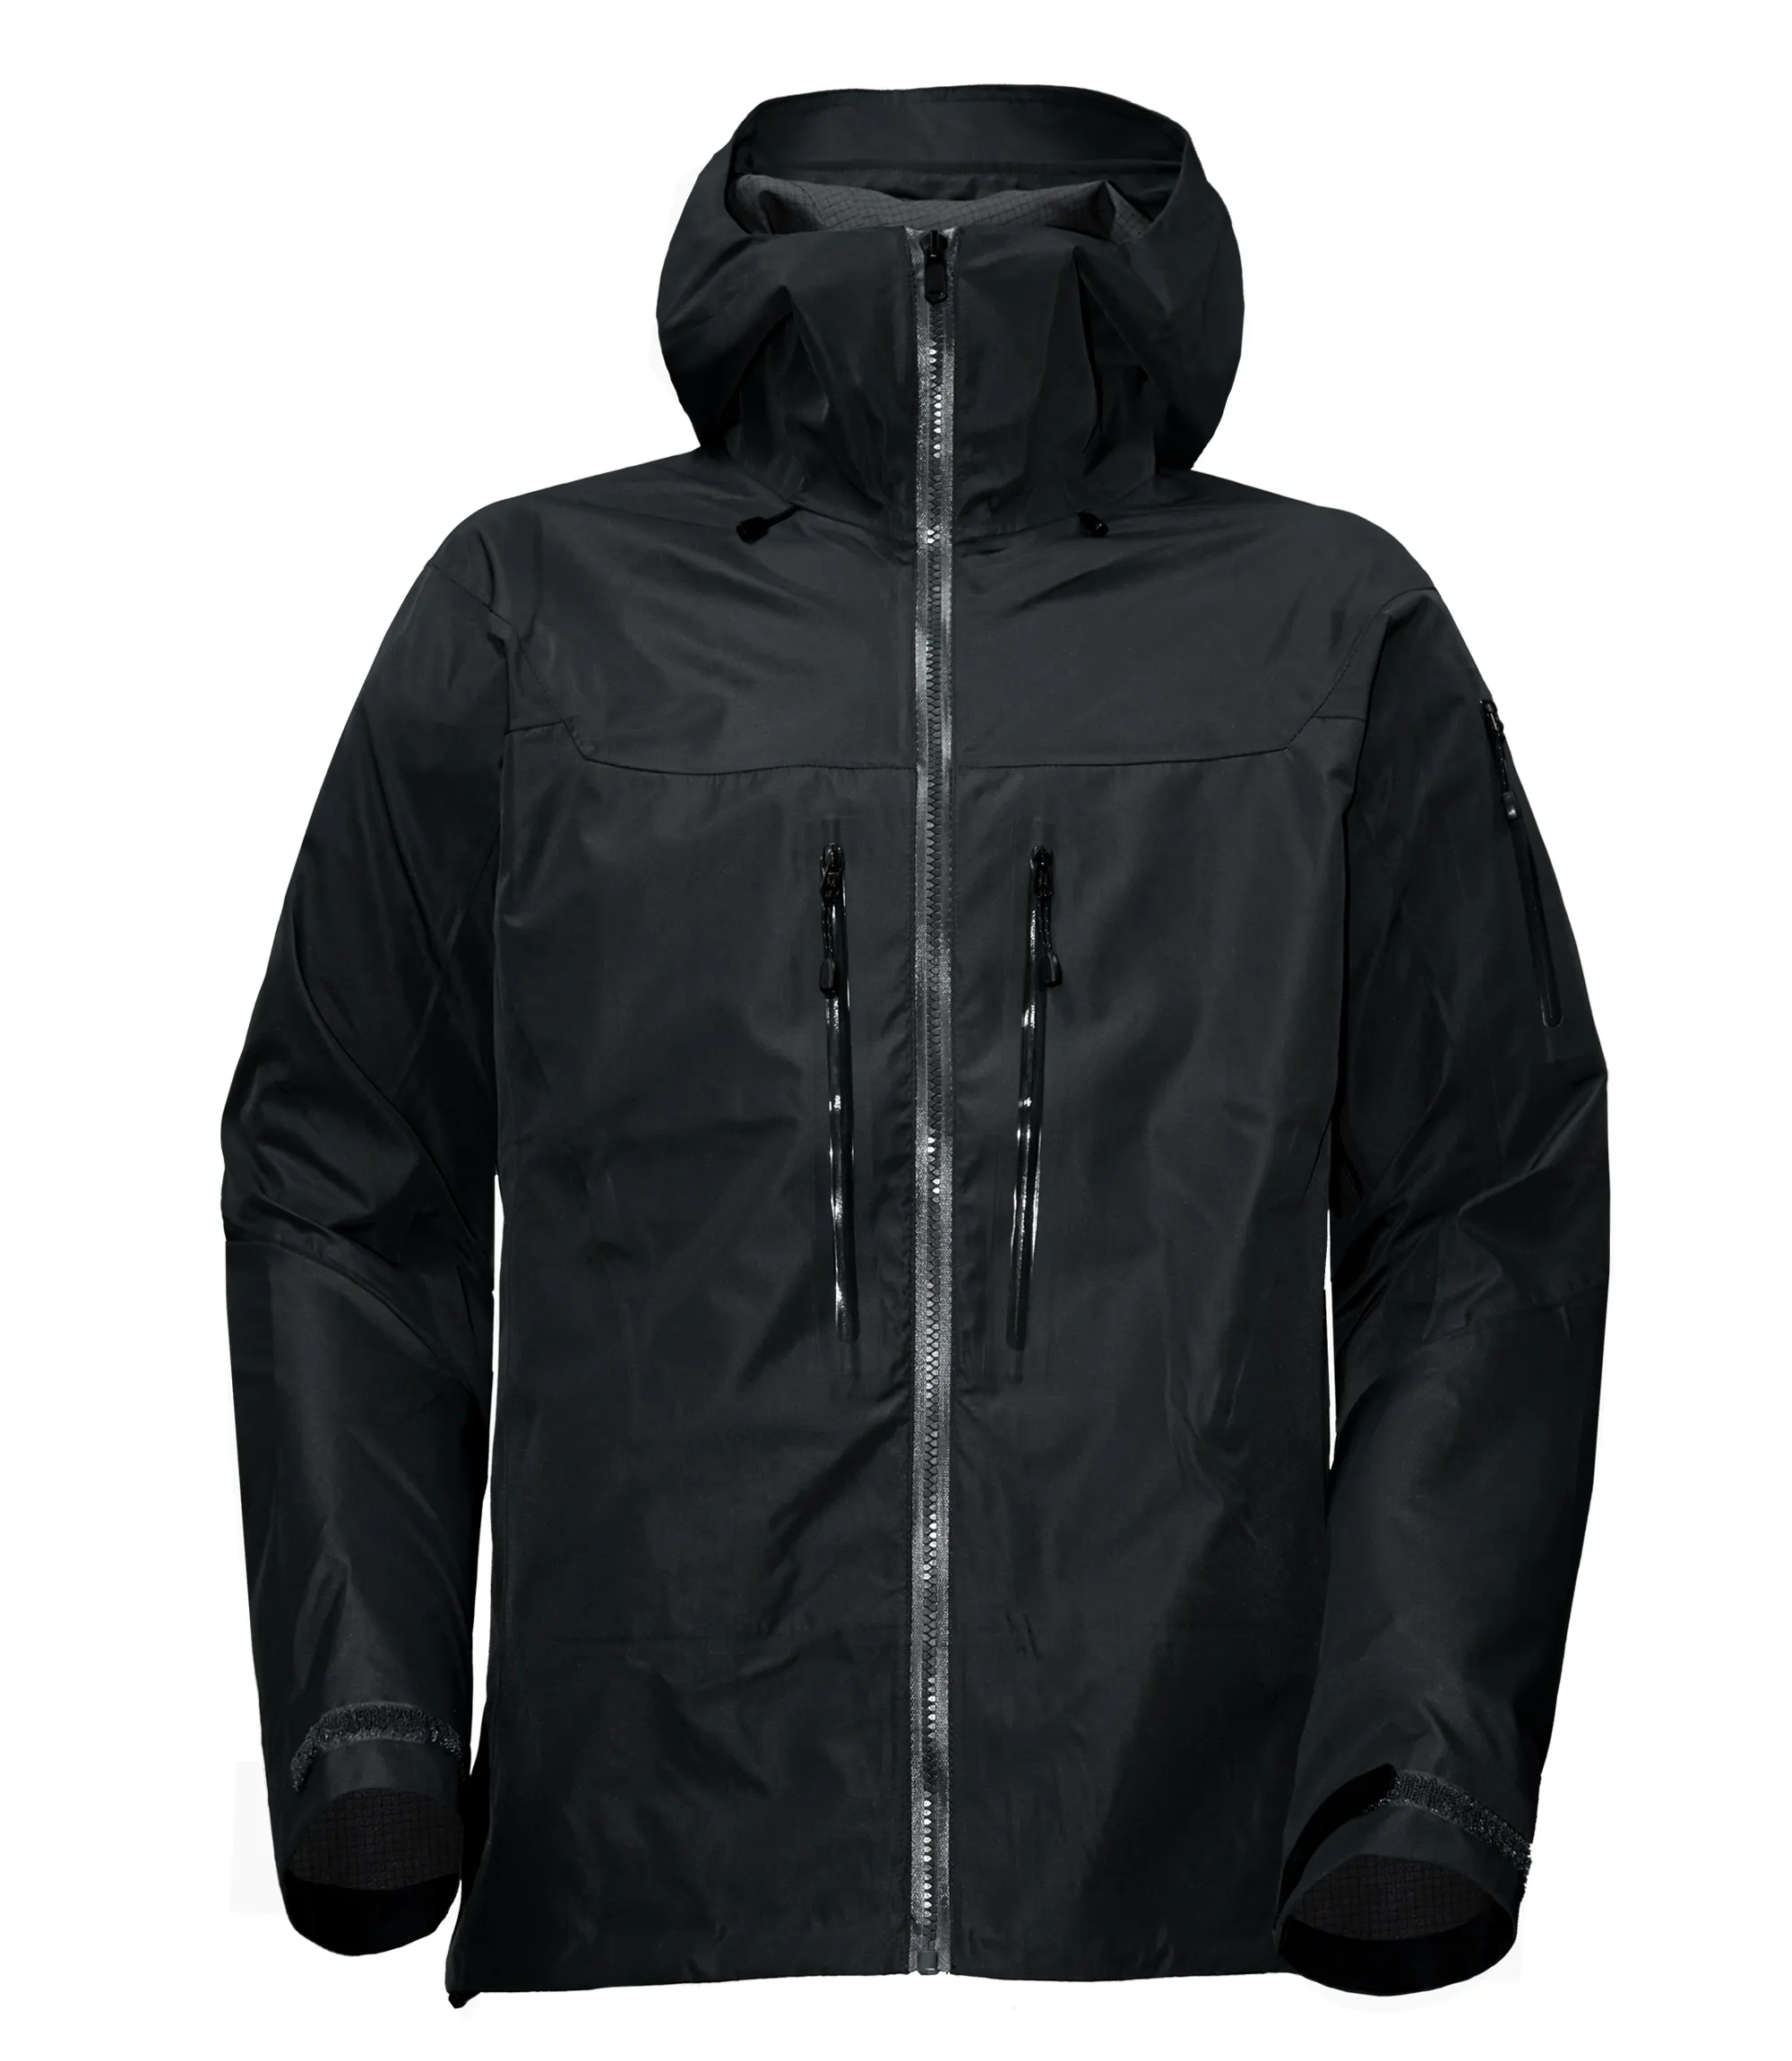 Teryx jaqueta de arco personalizada, à prova d' água, para caminhadas, equipamento de chuva, costura para startups tech jacket